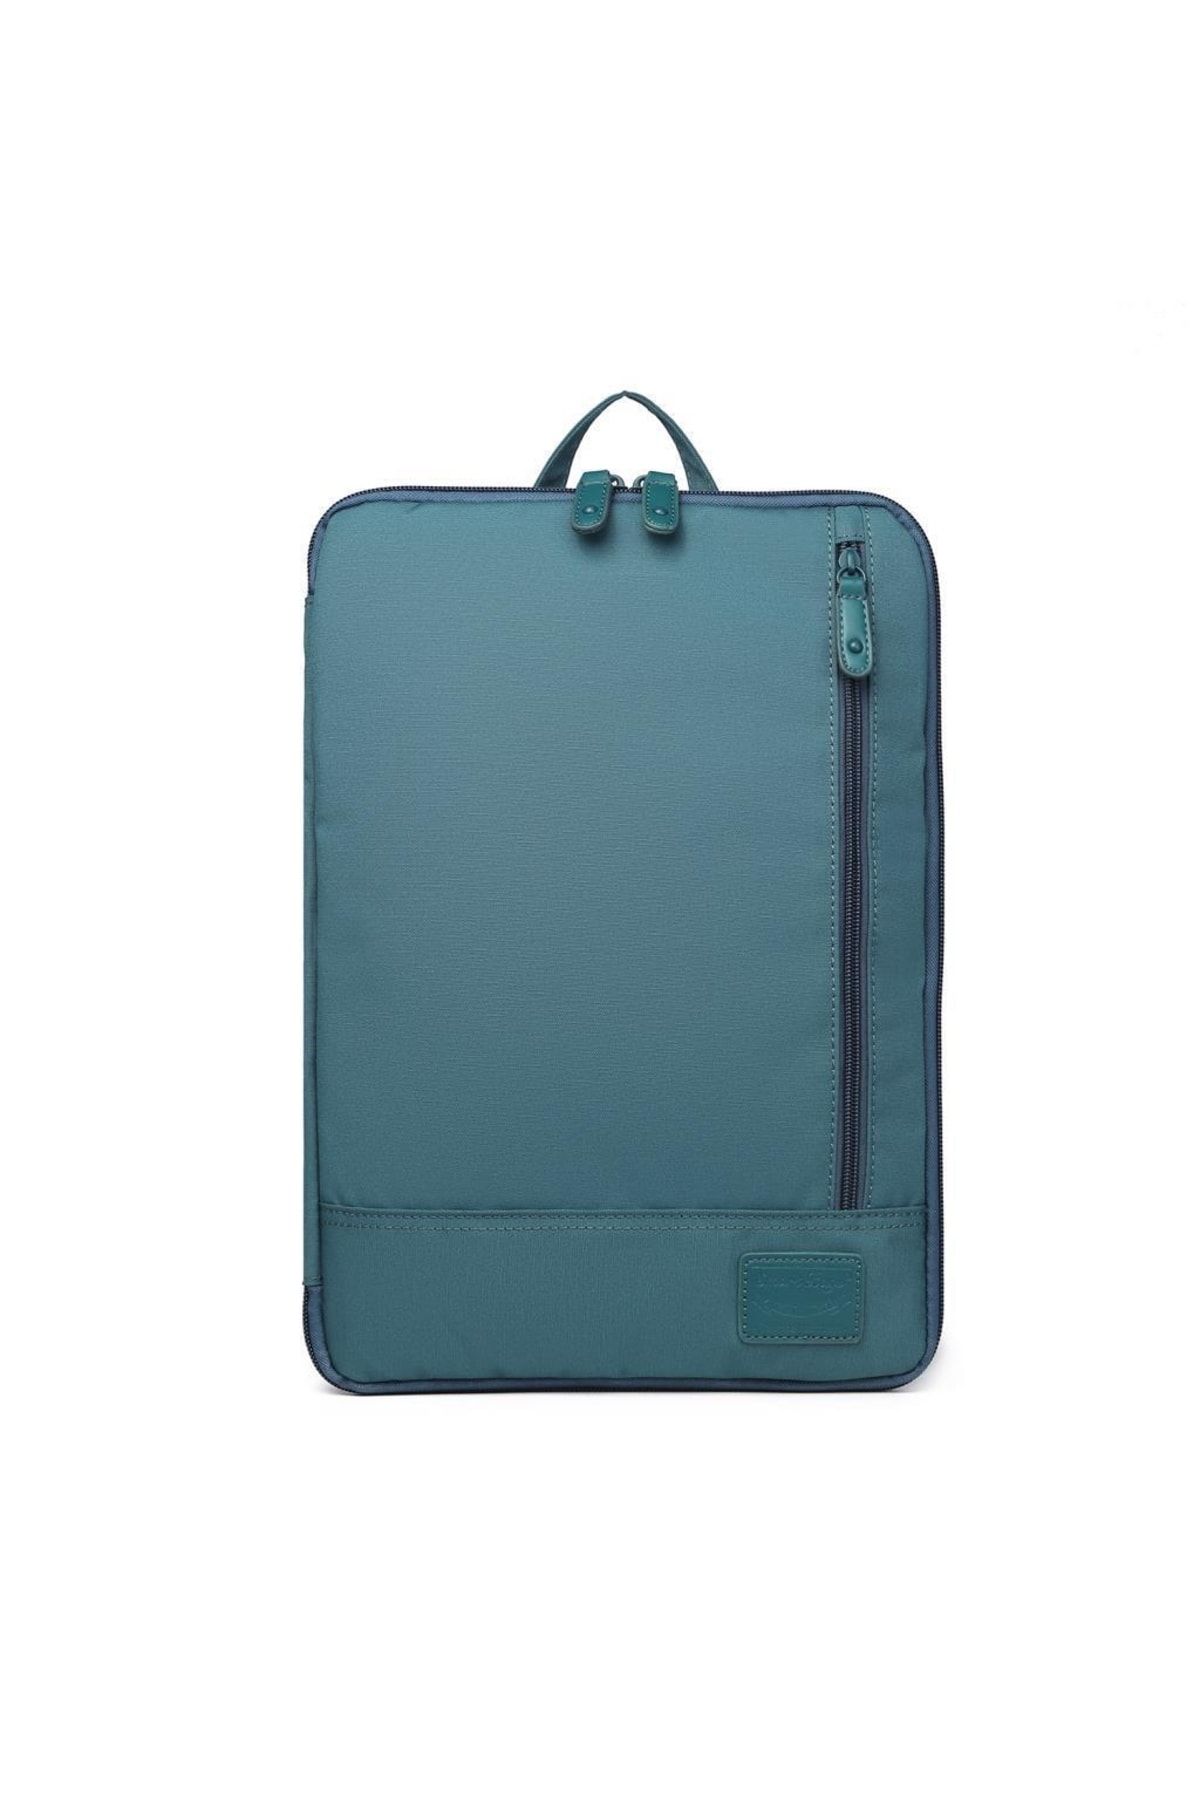 Smart Bags 34 X 24,5 Cihaz Için Laptop Kılıfı Uniseks 3191